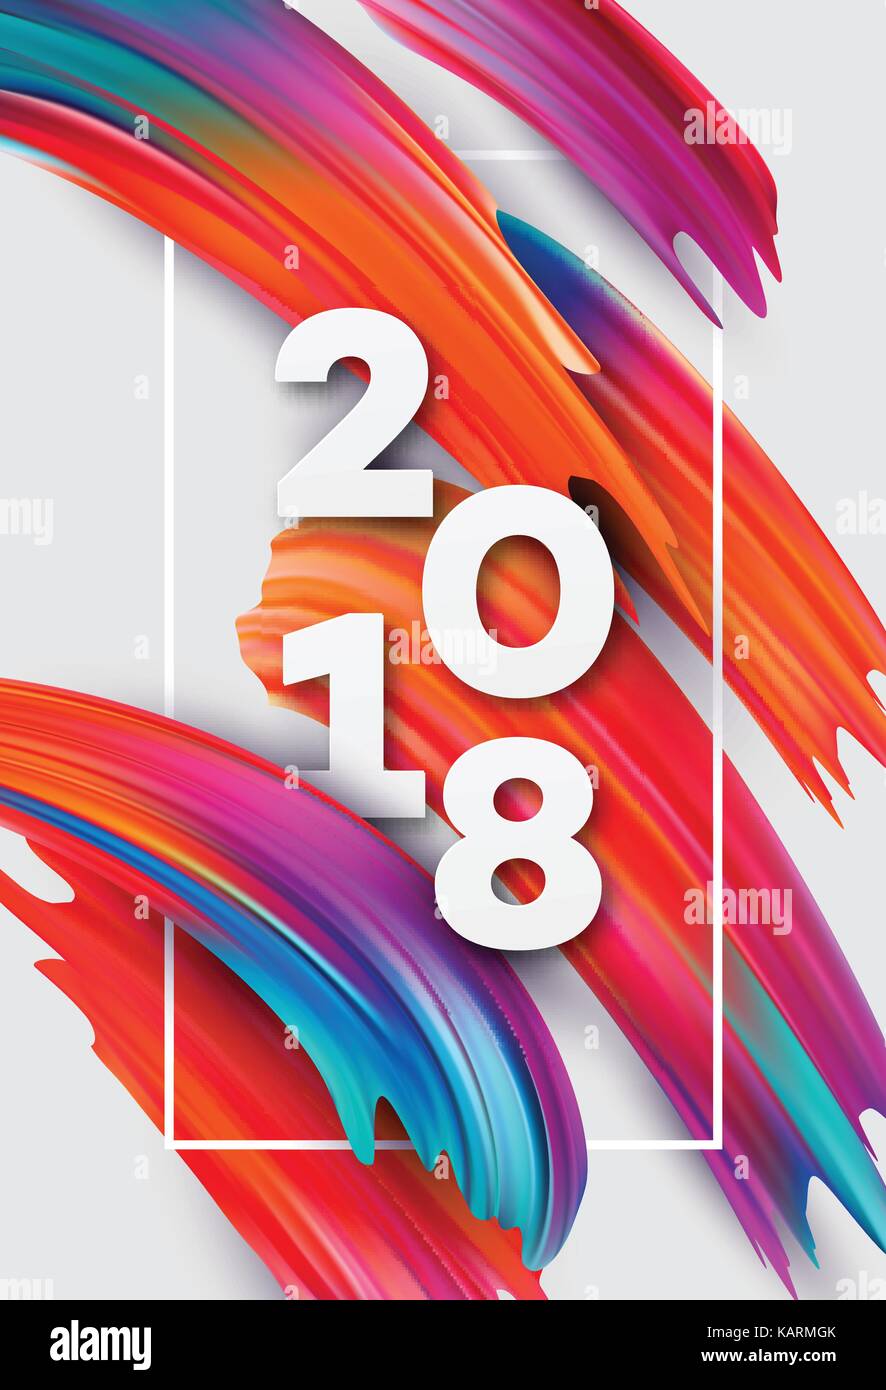 2018 Das neue Jahr auf dem Hintergrund einer bunten Pinselstrich Öl- oder Acrylfarbe Gestaltungselement für Präsentationen, Flyer, Faltblätter, Postkarten und Poster. Vector Illustration Stock Vektor